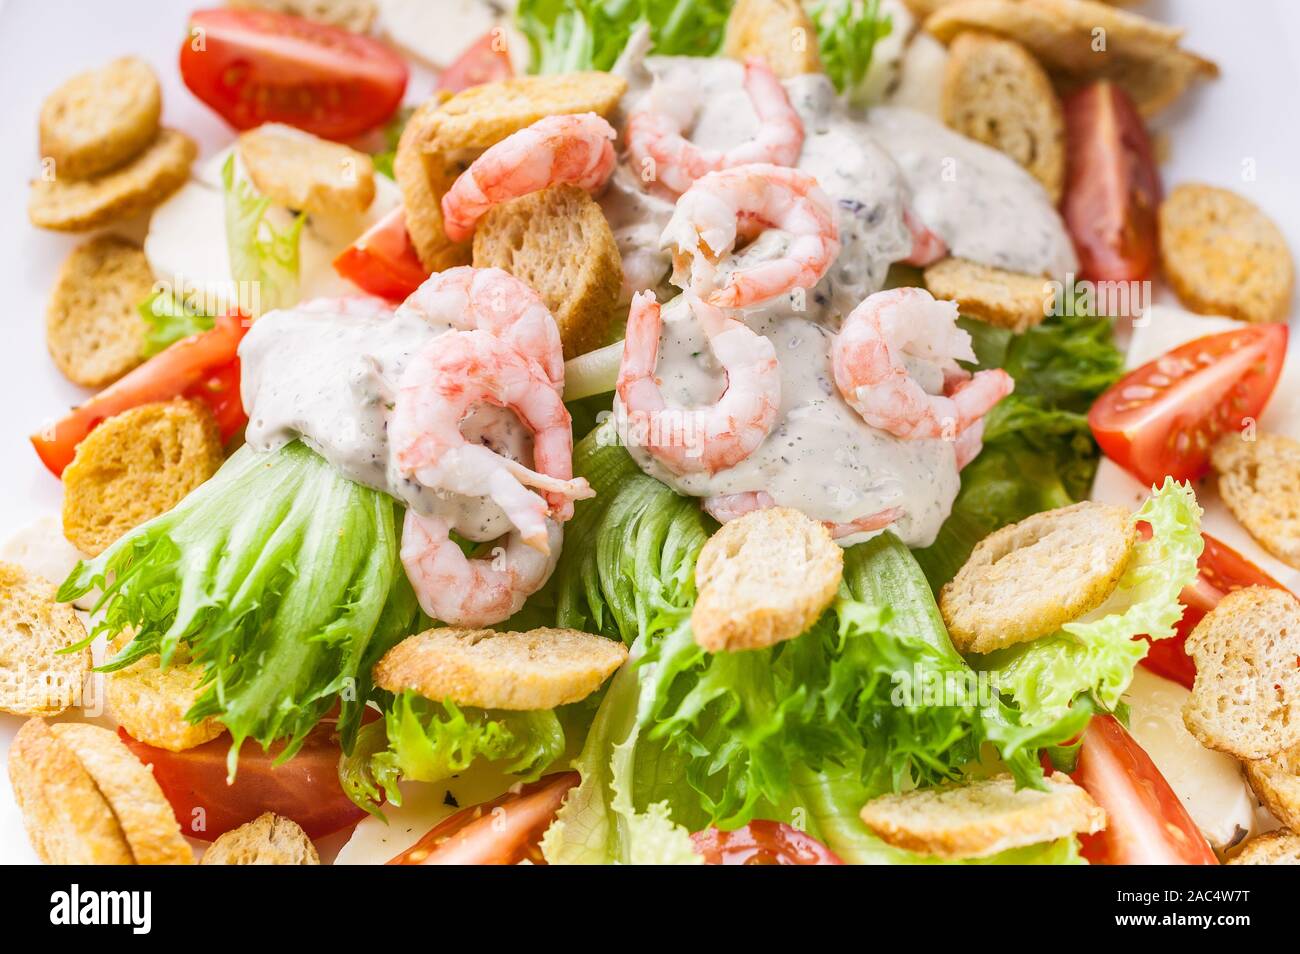 Close-up avec salade de crevettes, avocat, laitue, fromage et craquelins sur une plaque blanche. Recettes de fruits de mer délicieux et sains. Banque D'Images